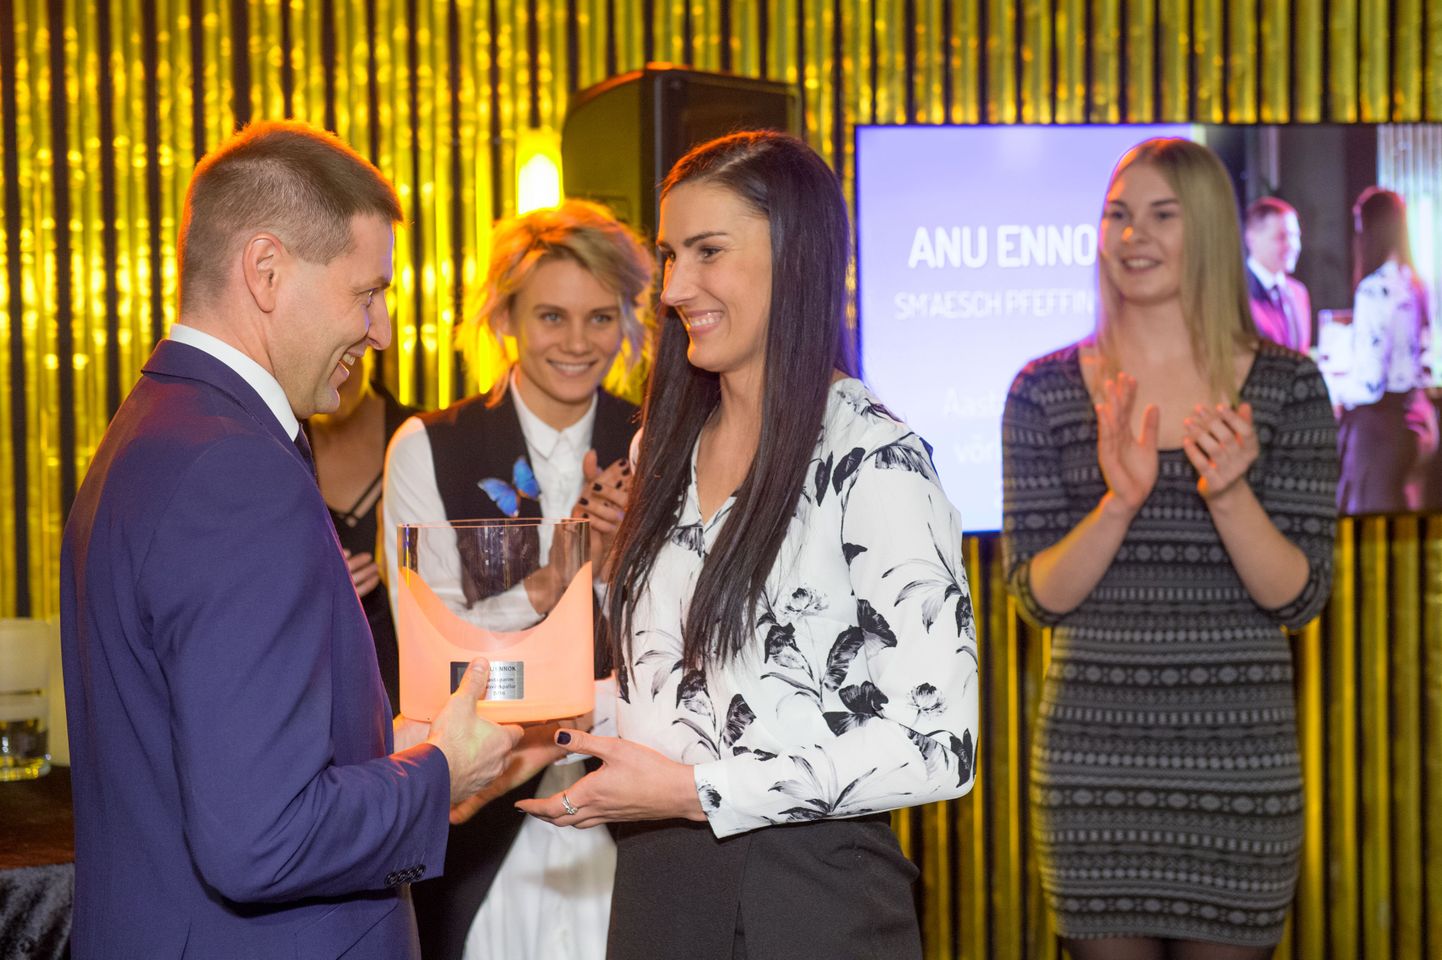 Aasta naisvõrkpalluri tiitli võitnud Anu Ennokit õnnitleb Eesti Võrkpalli Liidu president Hanno Pevkur.